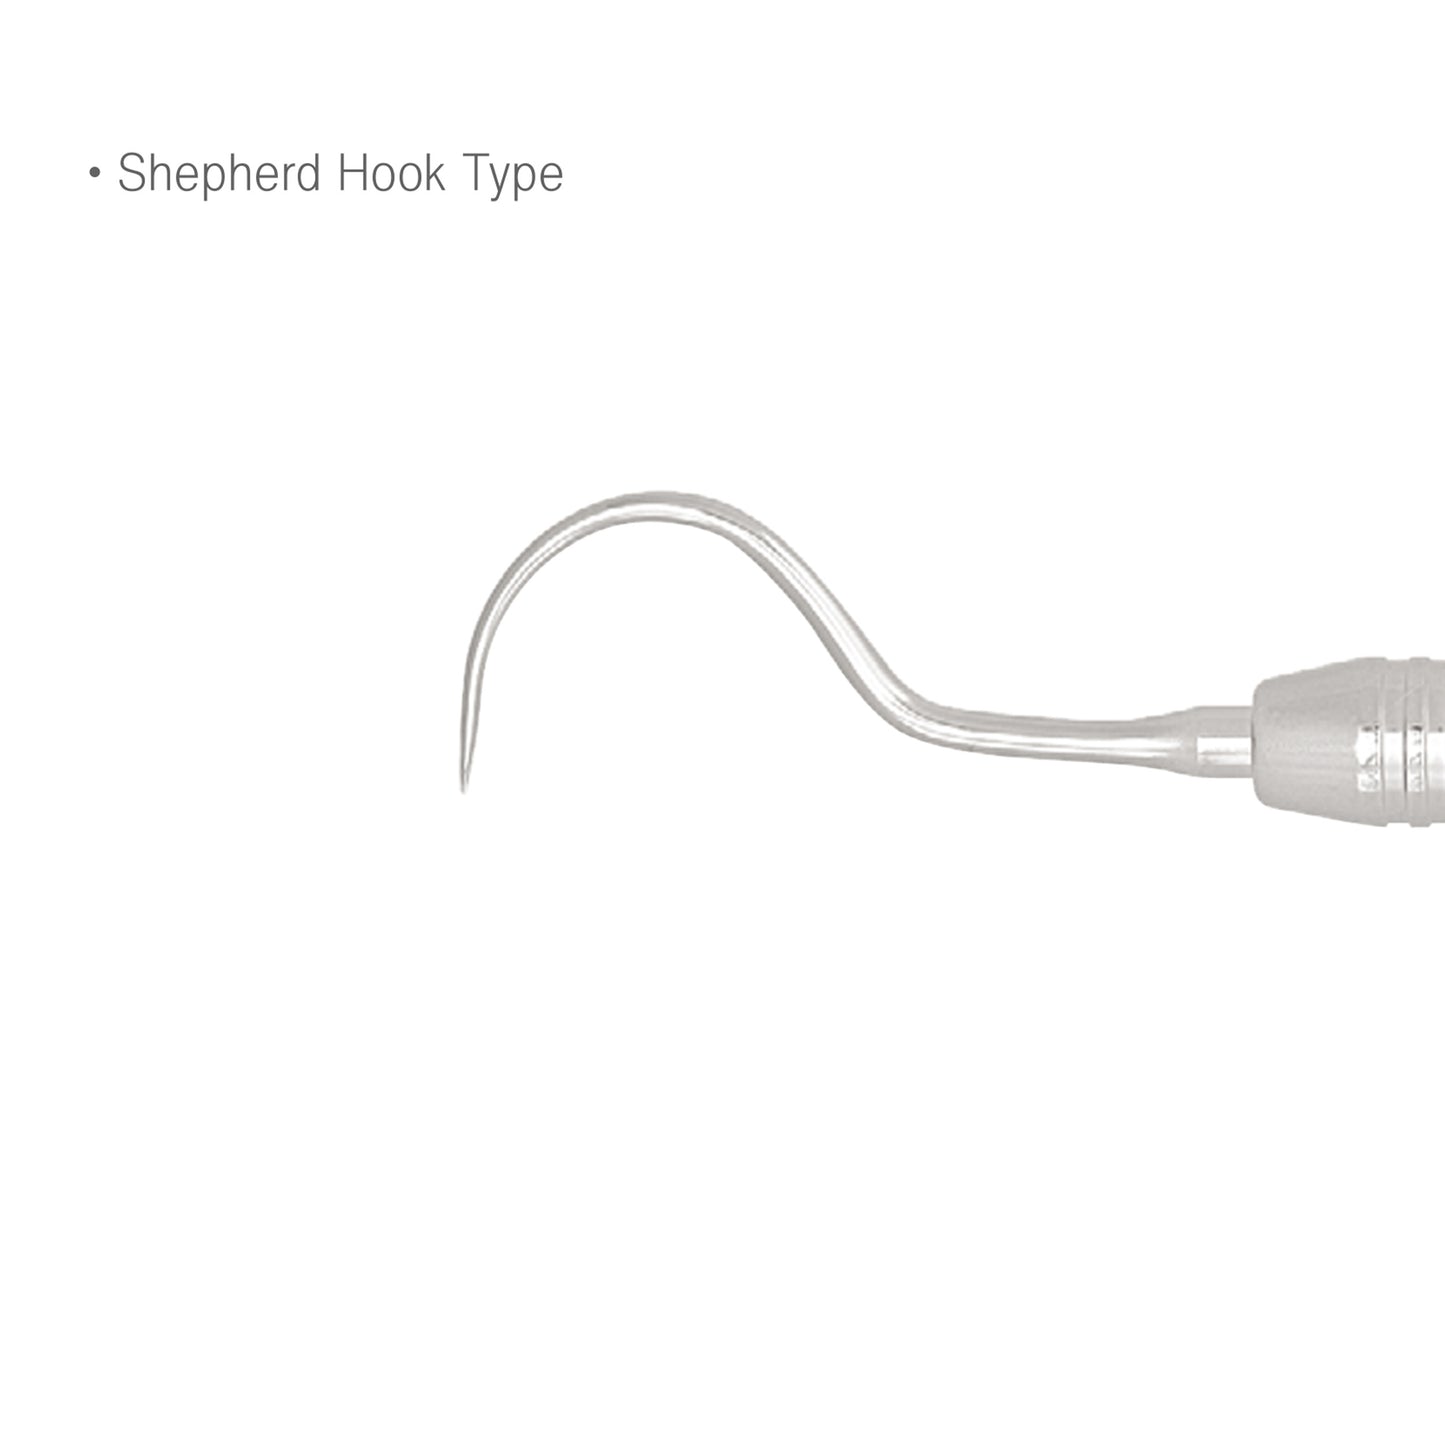 Osung #54H Shepherd Hook Type Dental Explorer Premium -EXS54H